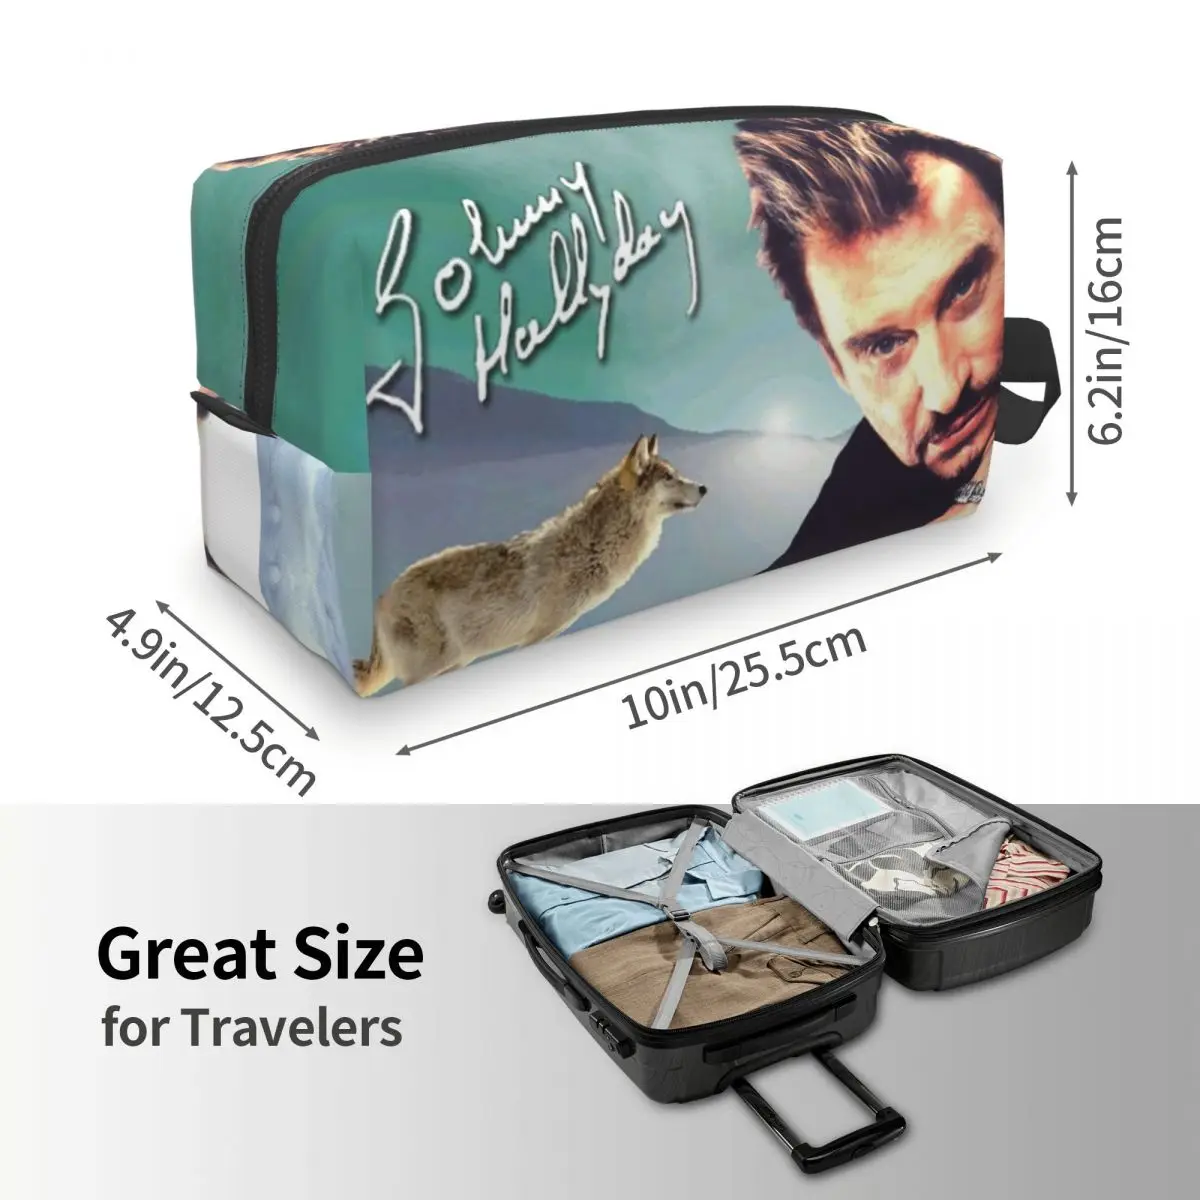 Косметичка Johnny Hallyday для женщин, косметический органайзер для путешествий, Модные сумки для хранения туалетных принадлежностей французской рок-певицы 3